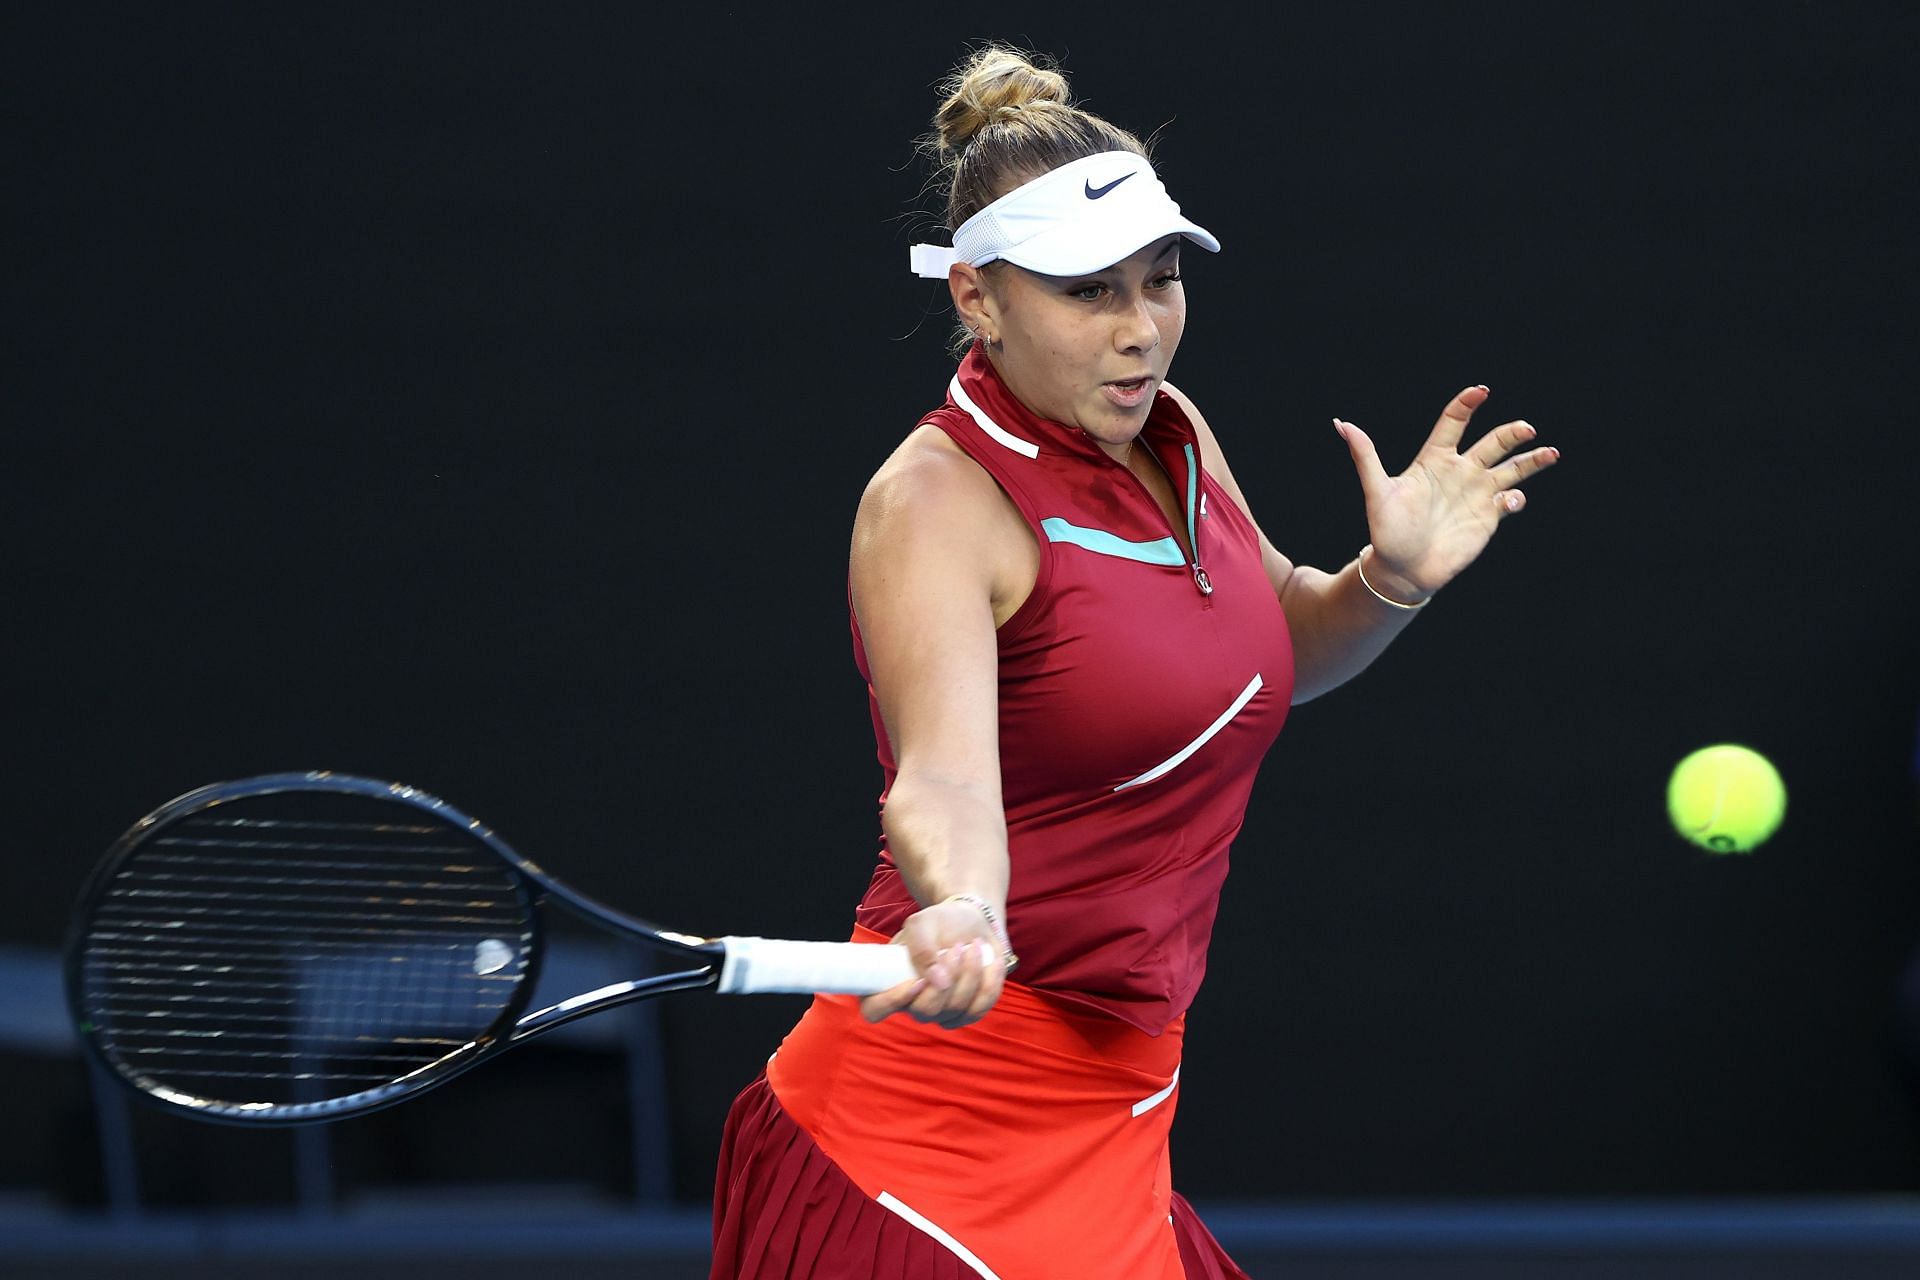 Amanda Anisimova found a way past Naomi Osaka to reach the fourth round of the Australian Open